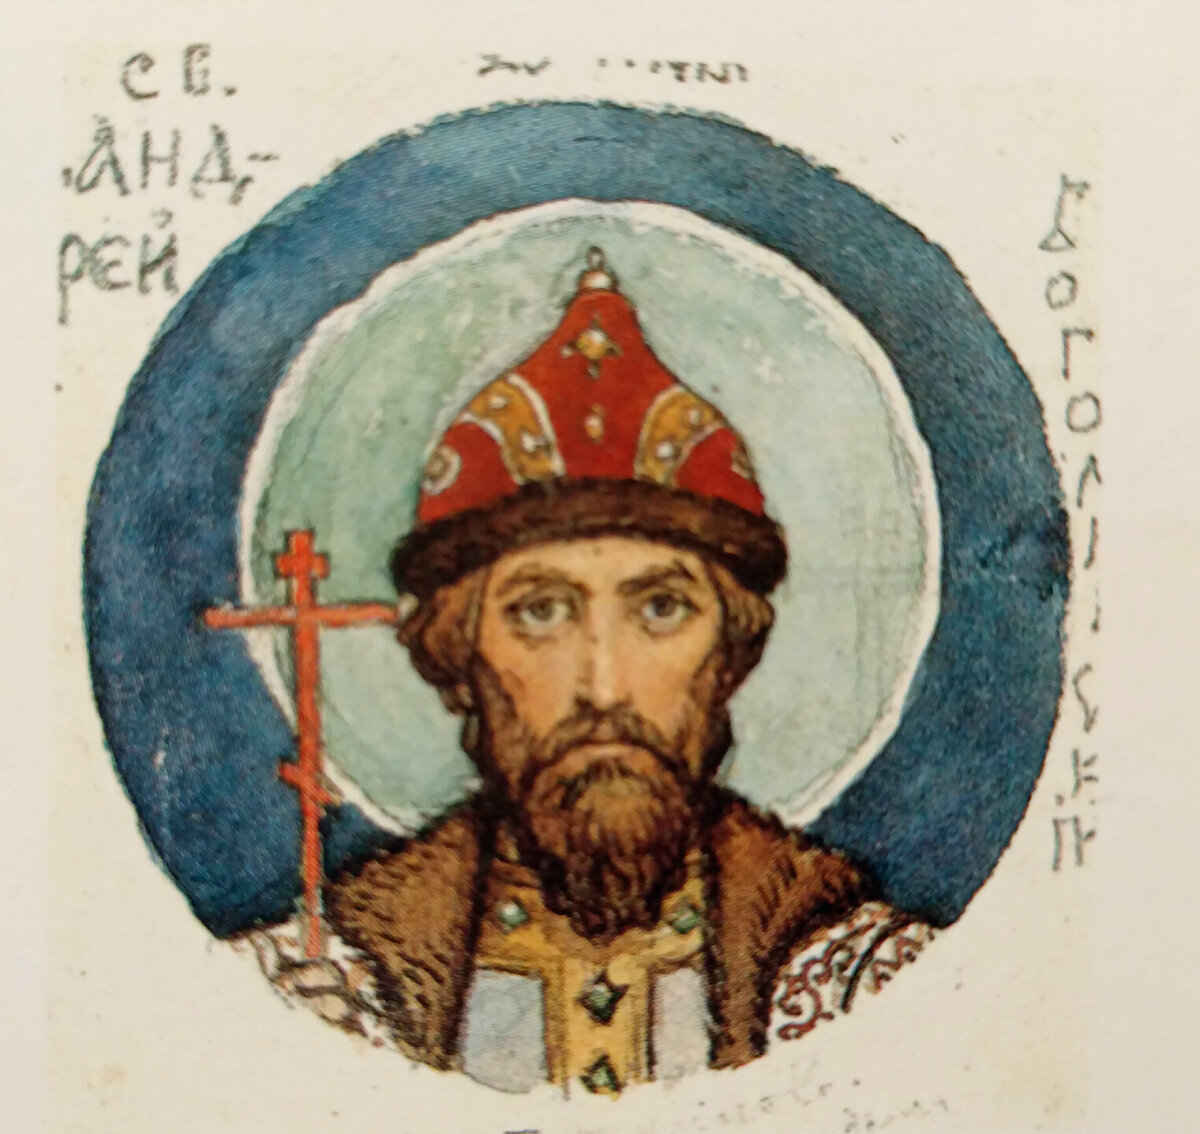 Князь Андрей Боголюбский